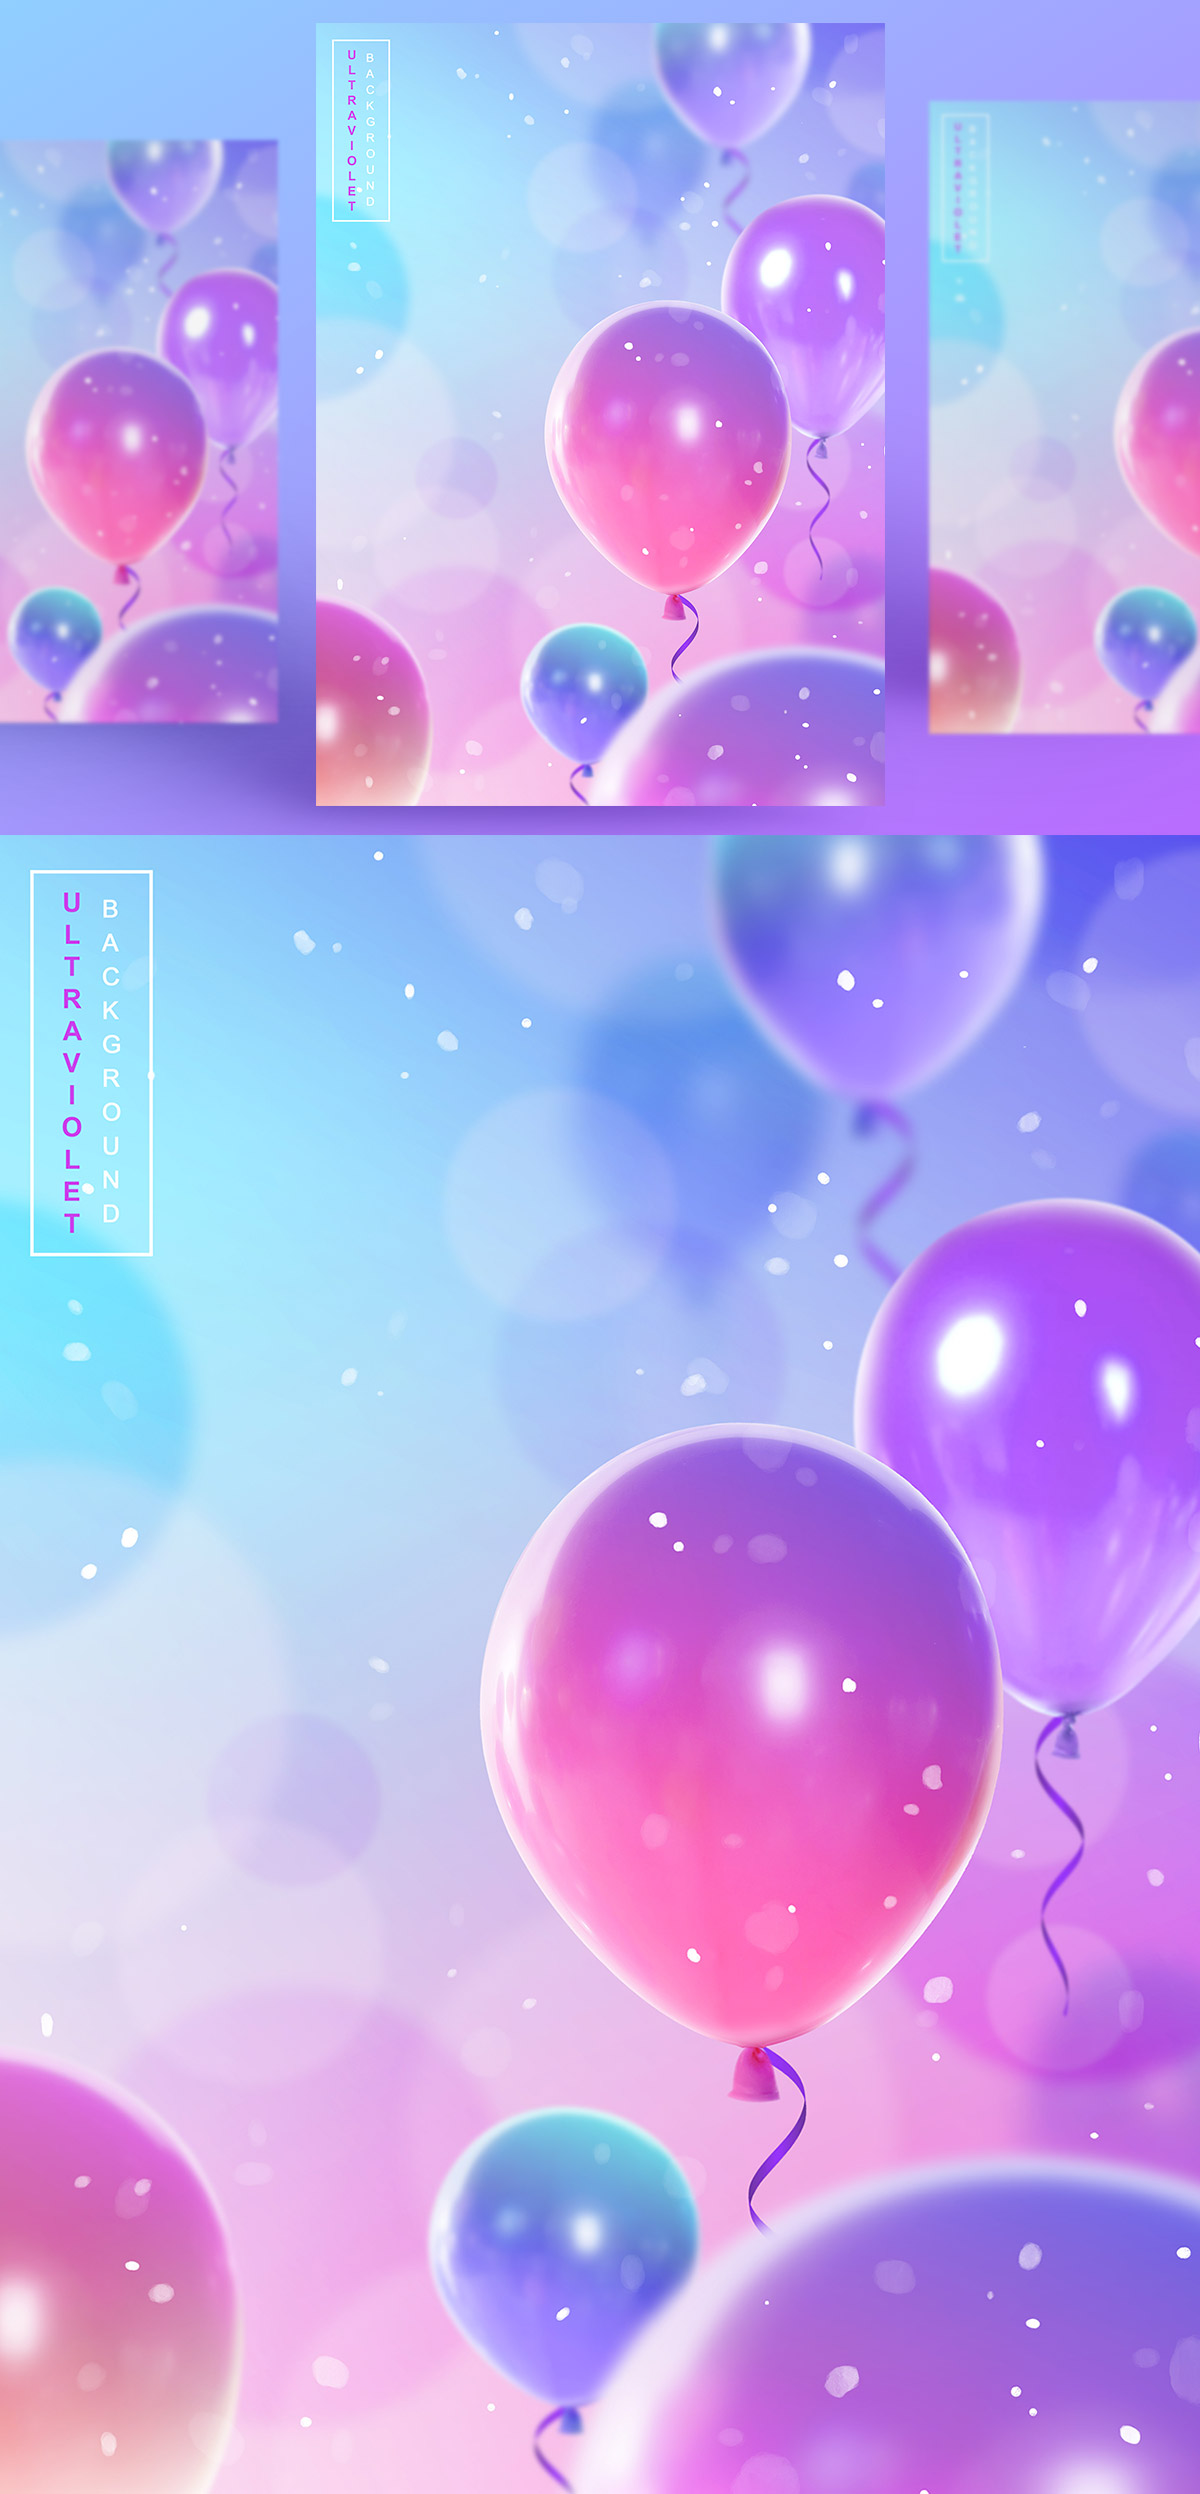 浪漫紫色透明彩色气球气泡节日生日宴会婚礼背景海报PSD设计素